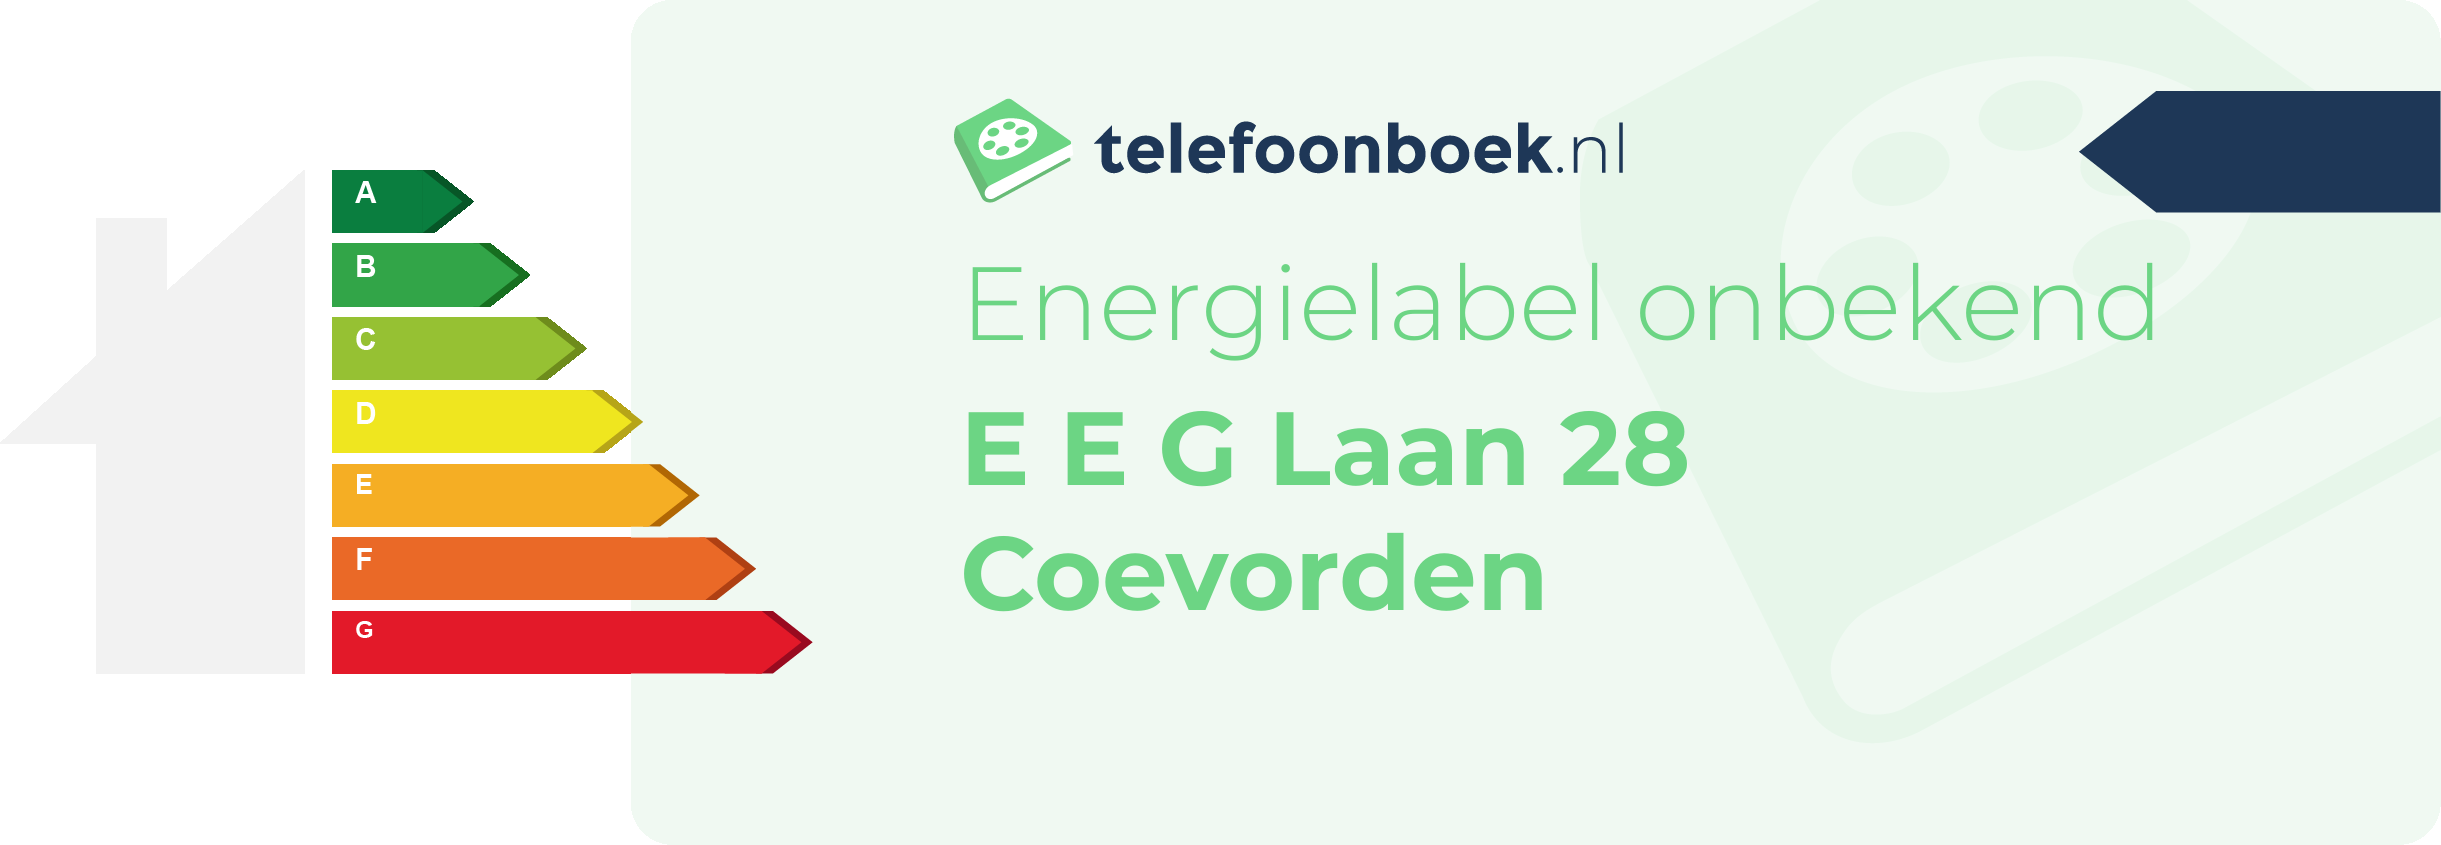 Energielabel E E G Laan 28 Coevorden